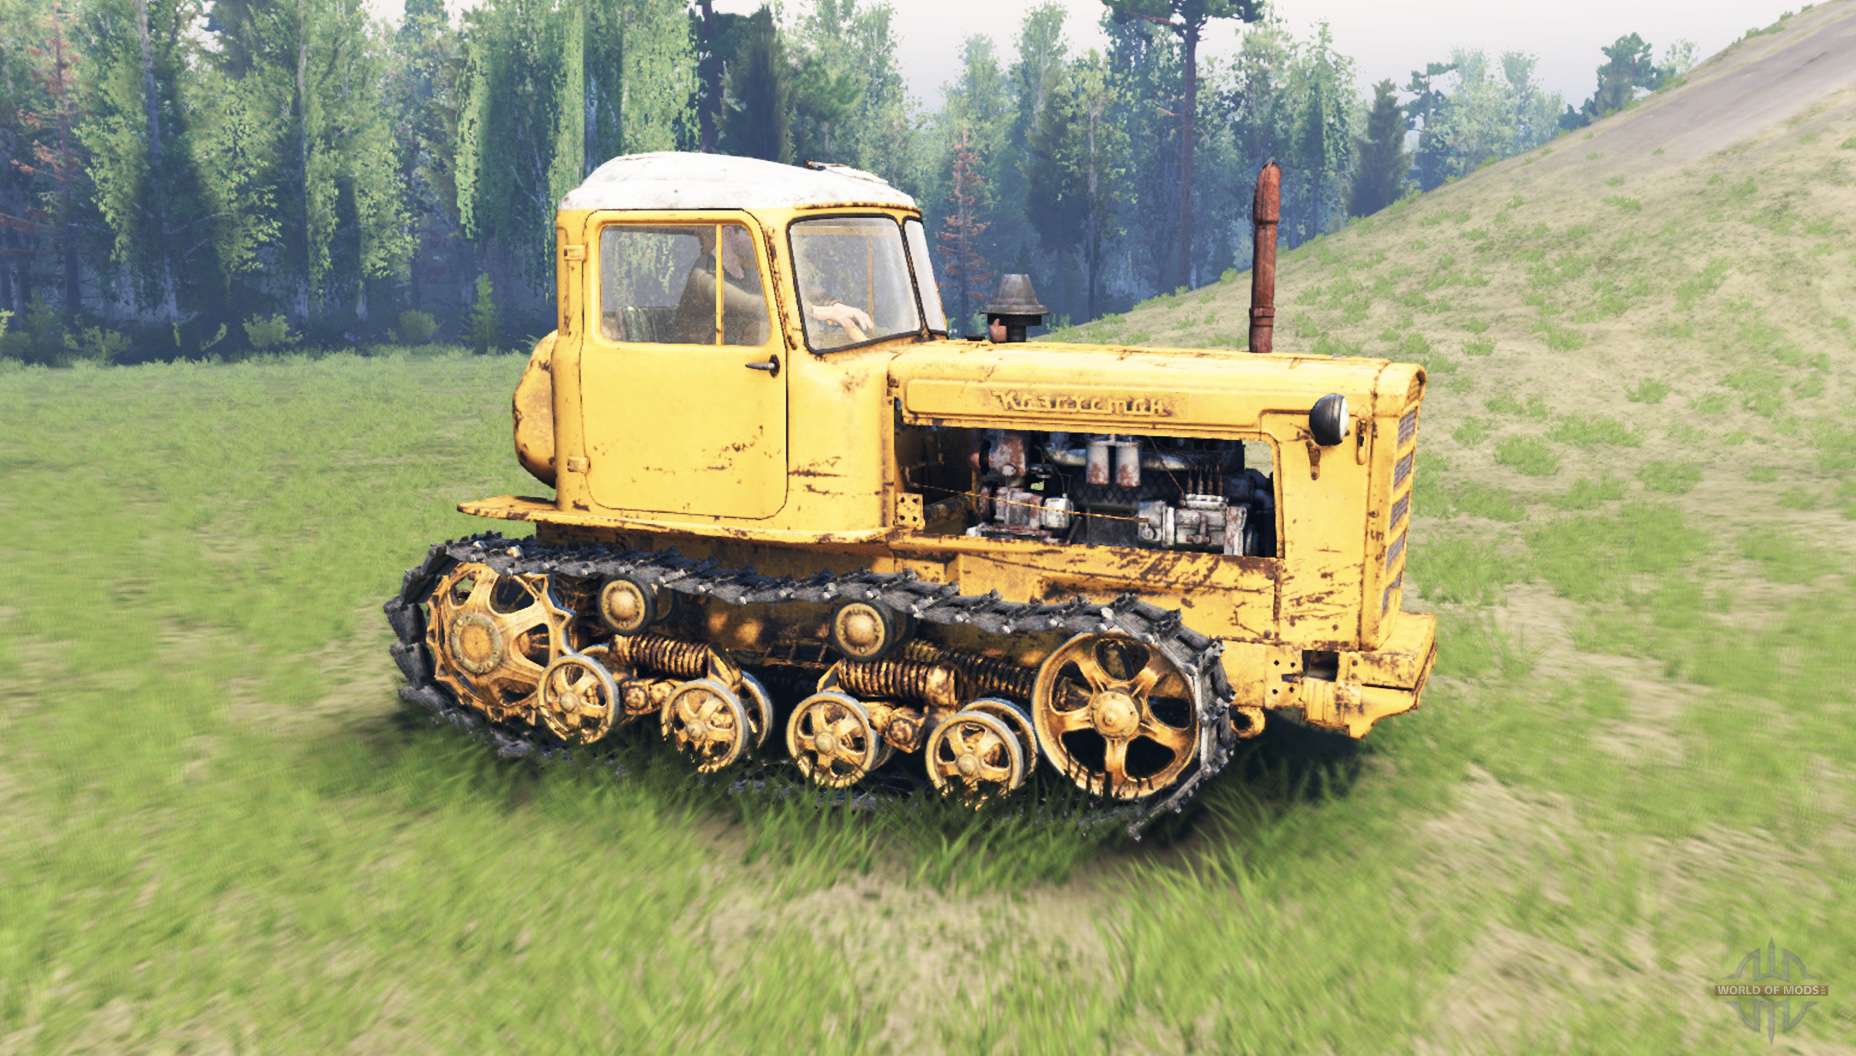 Купим дт россия. Трактор ДТ 75 желтый. Трактор гусеничный ДТ-75т. ДТ-75 трактор гусеничный. ДТ-75 трактор гусеничный желтый.